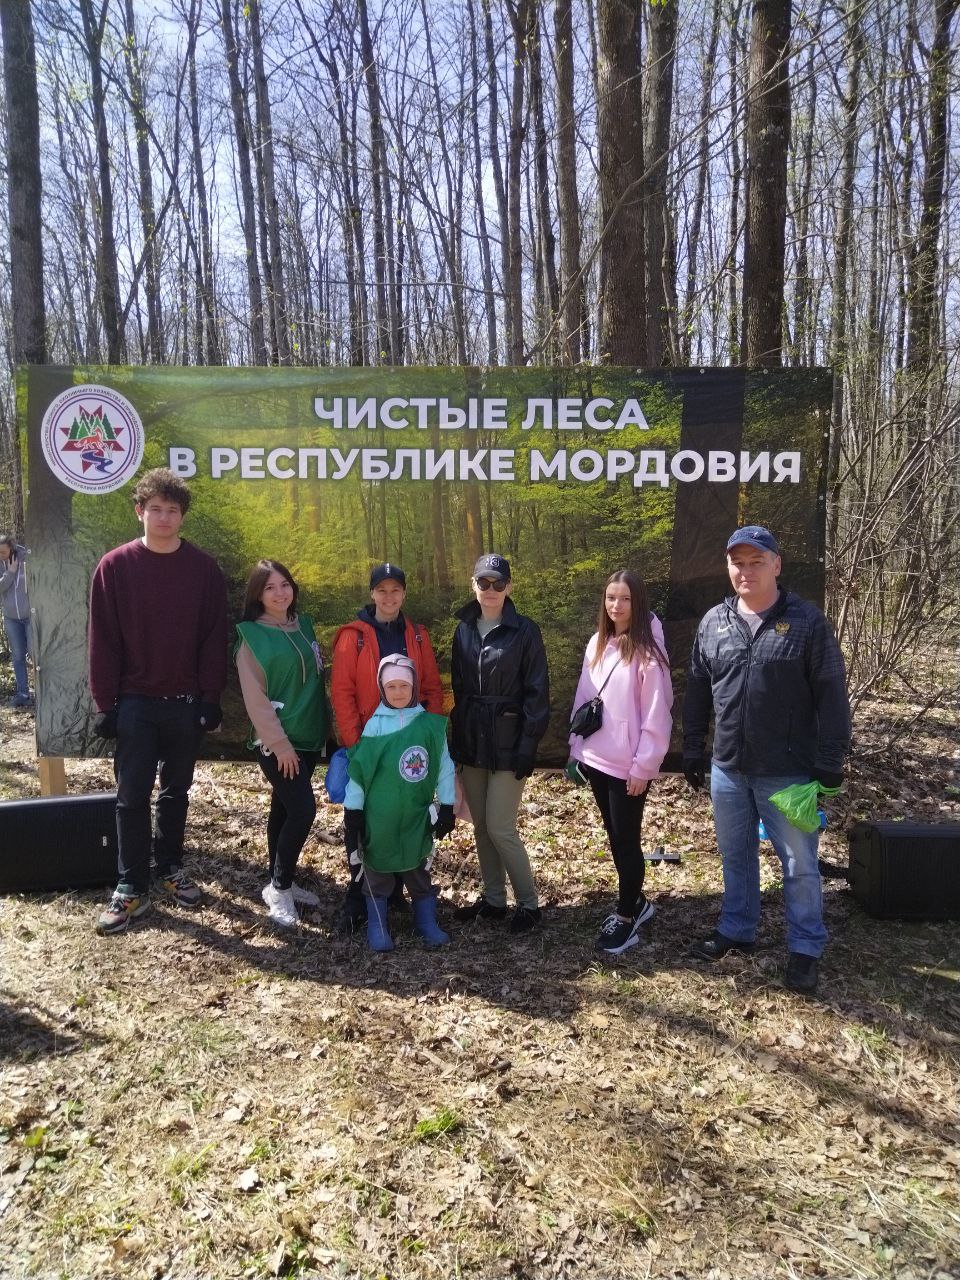 В Саранске прошла акция «Чистые леса в Республике Мордовия», в которой приняли участие сотрудники Министерства финансов Республики Мордовия.